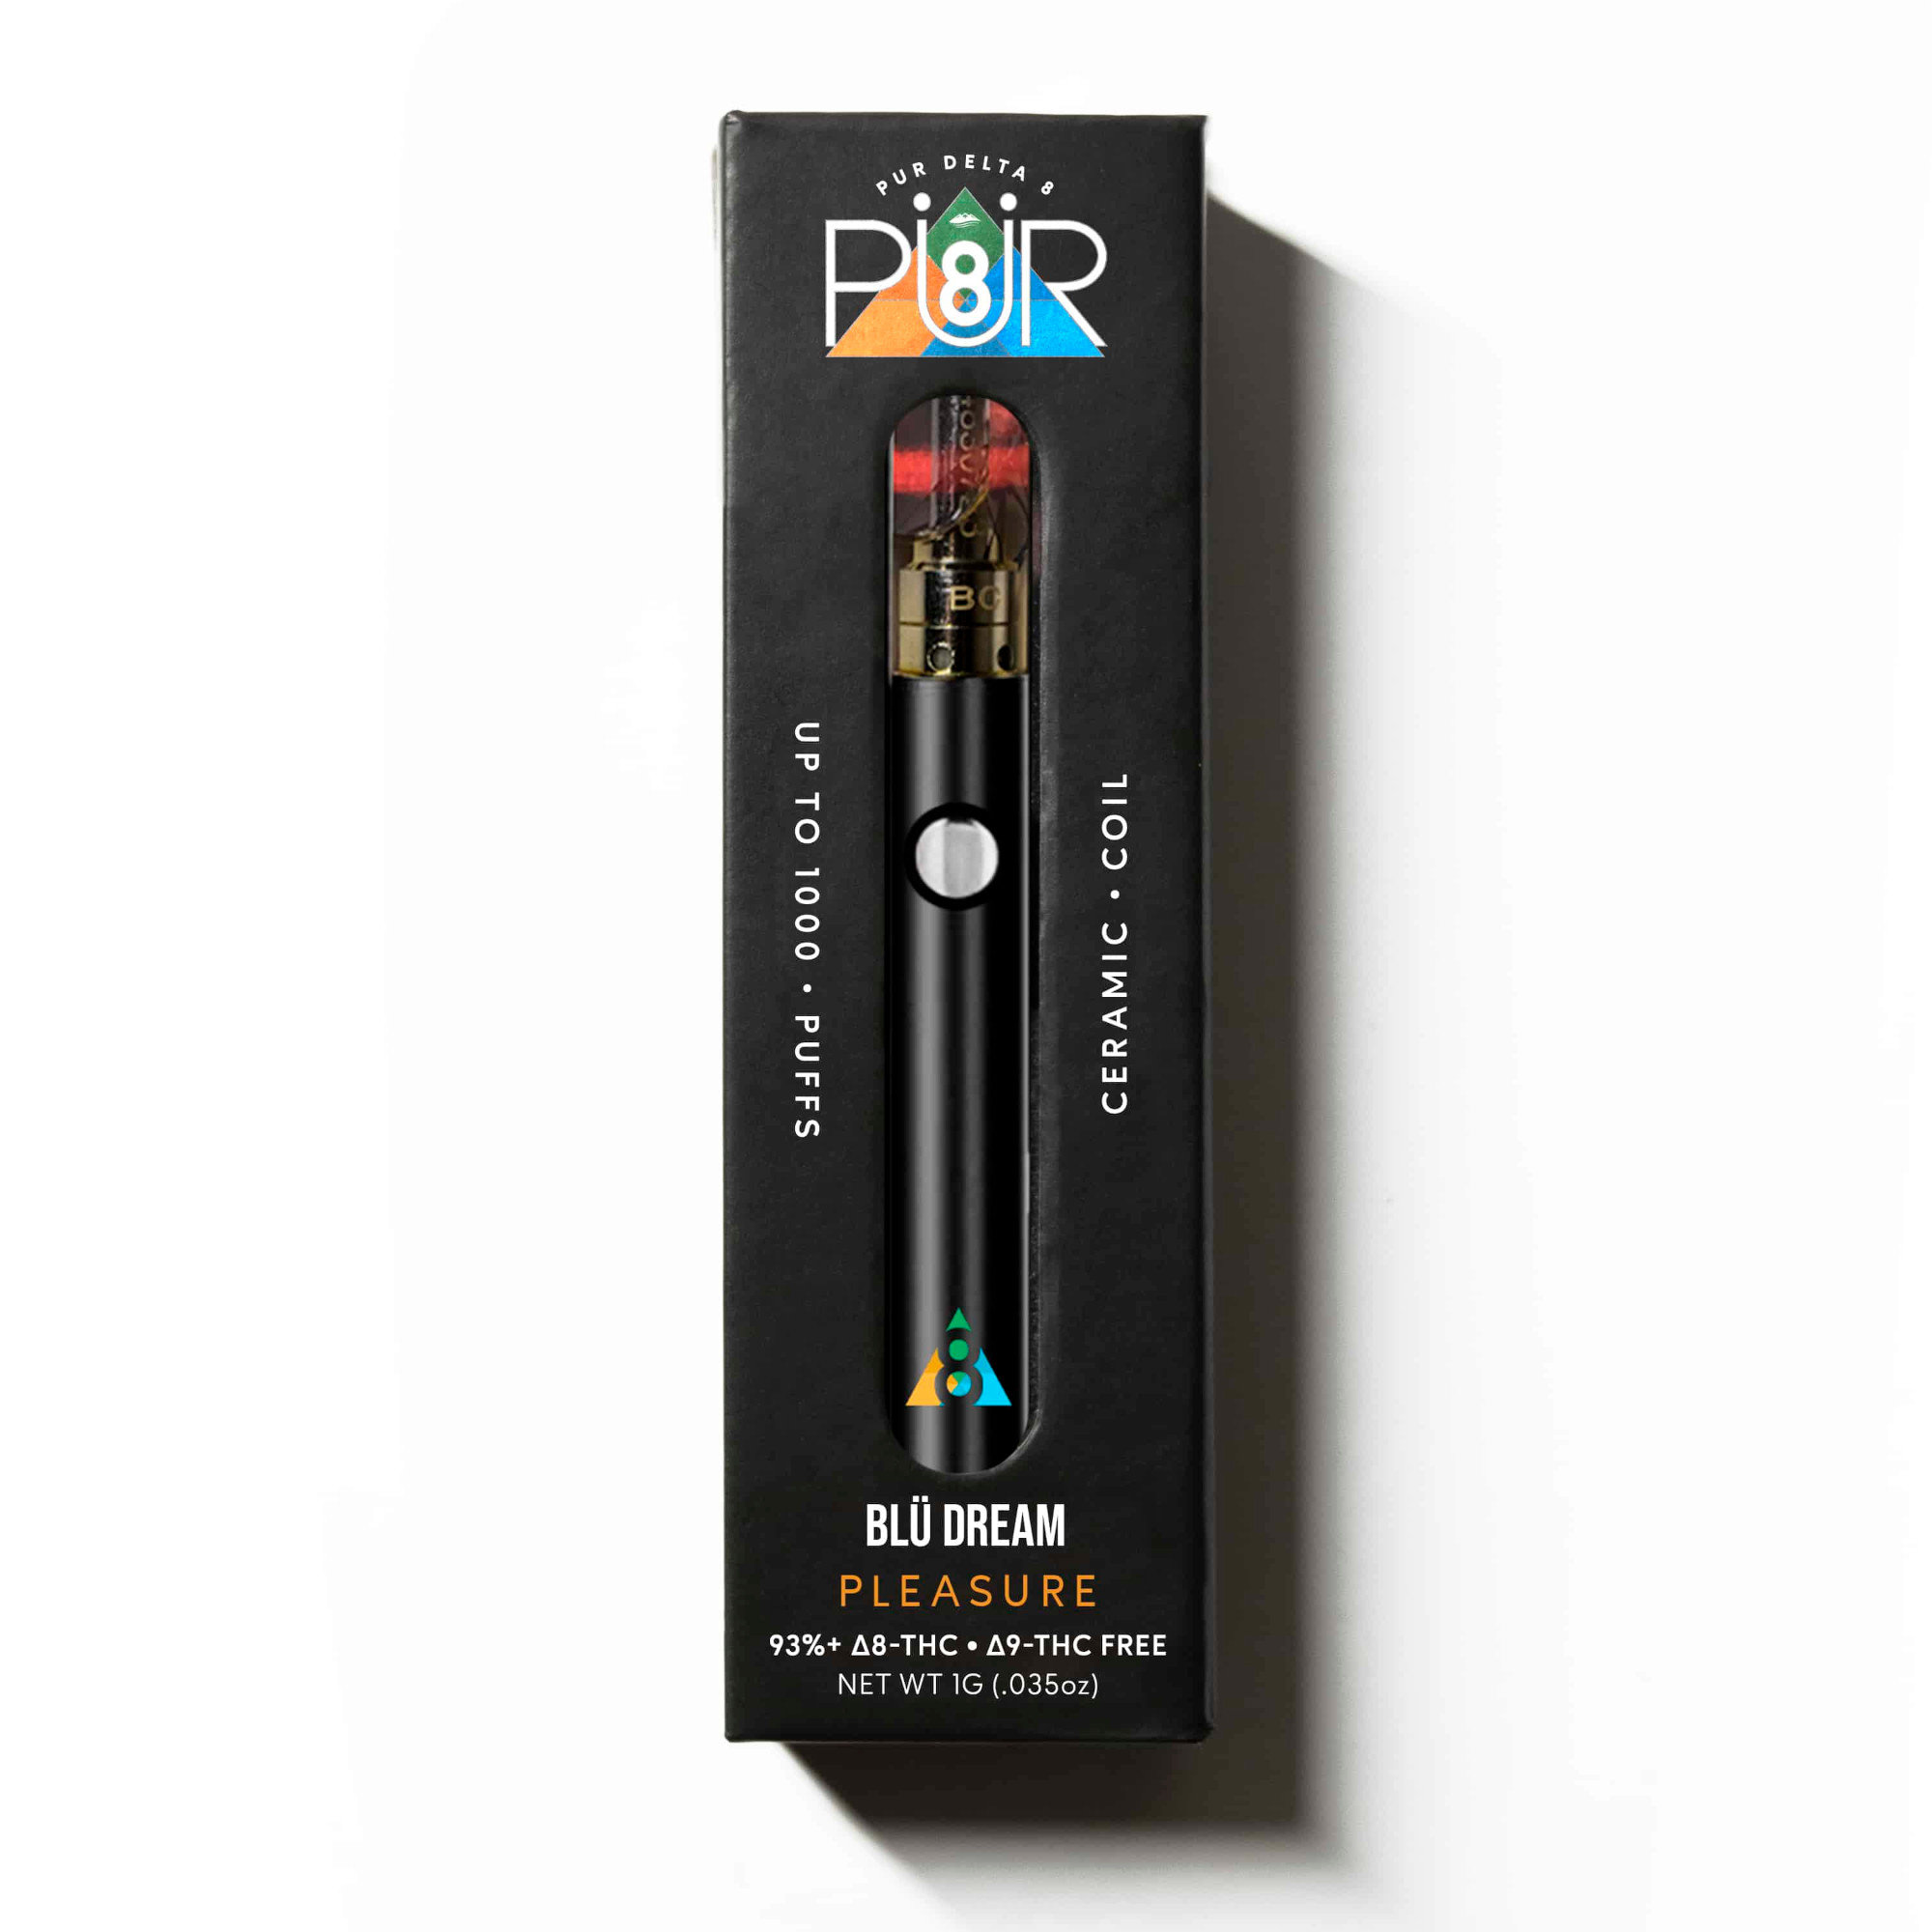 Shop Delta 8 Vape Pens  Premium Carts, Batteries & Disposables